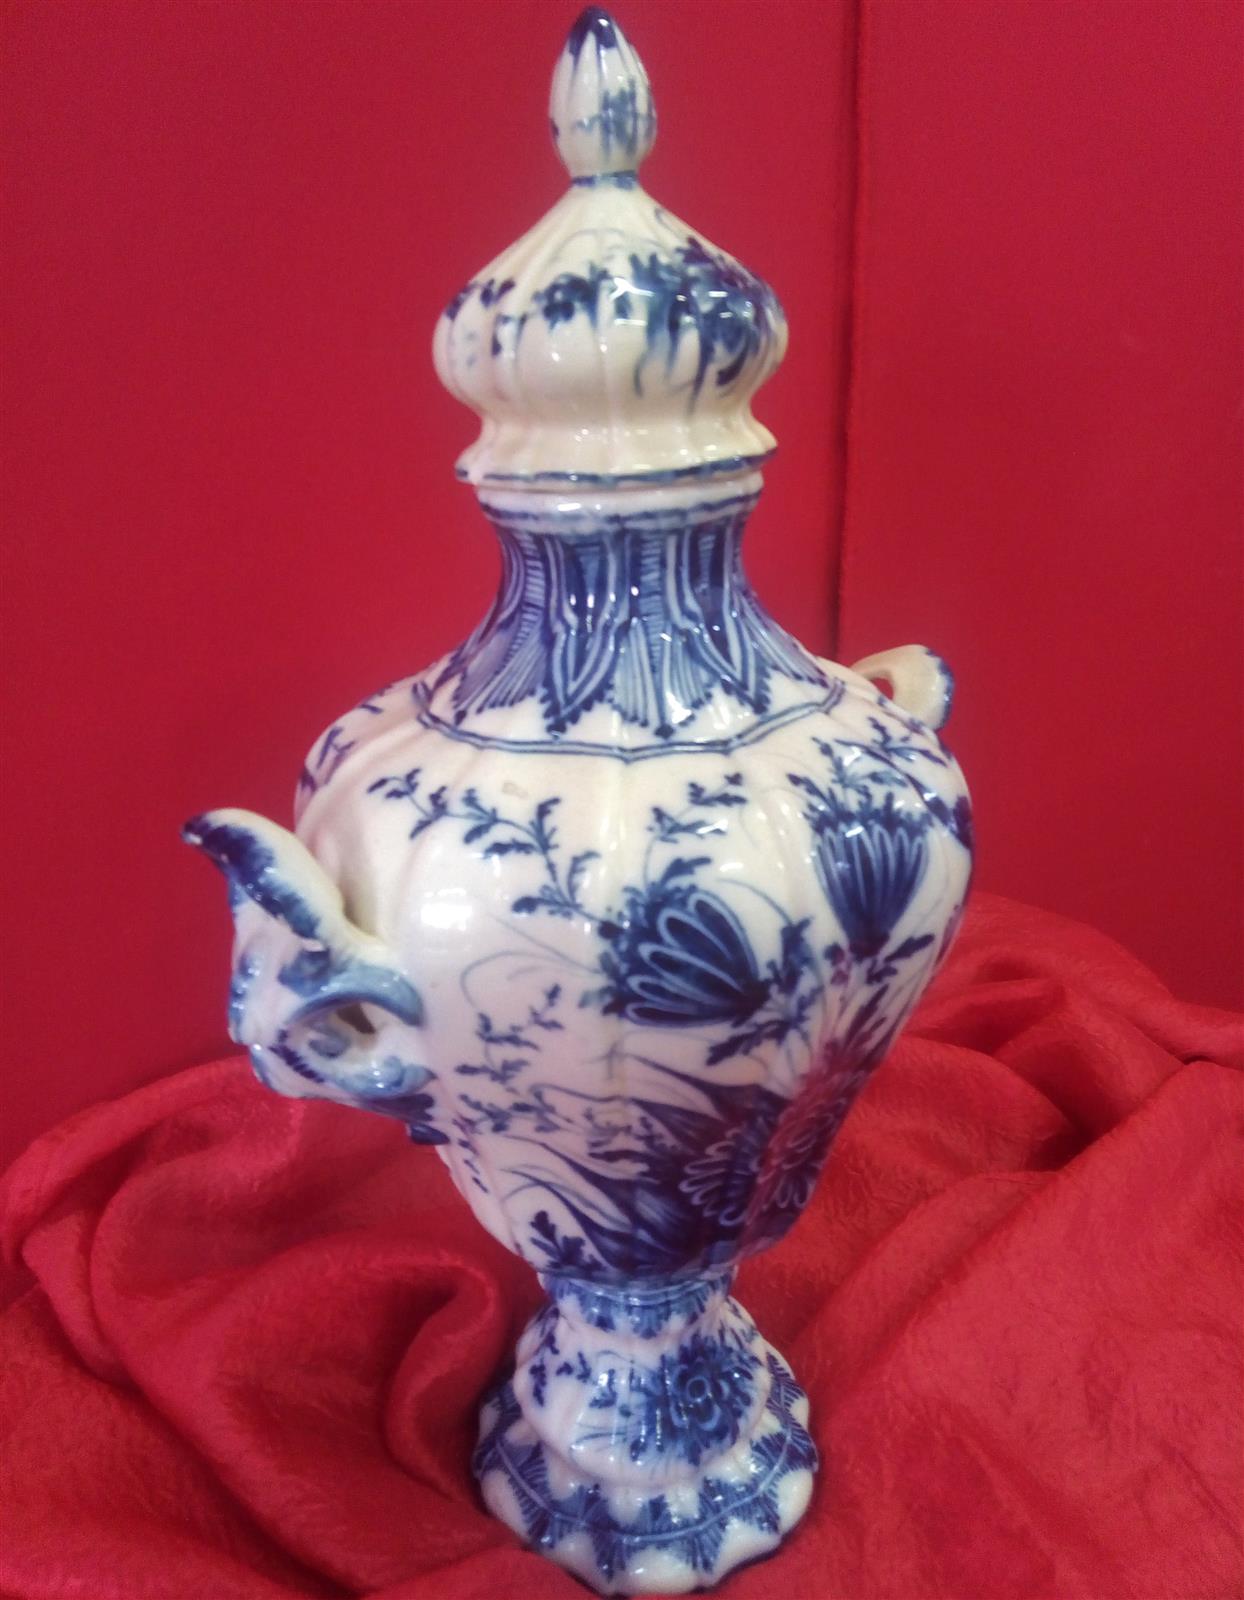 Vase with cap ceramic decorated in blue